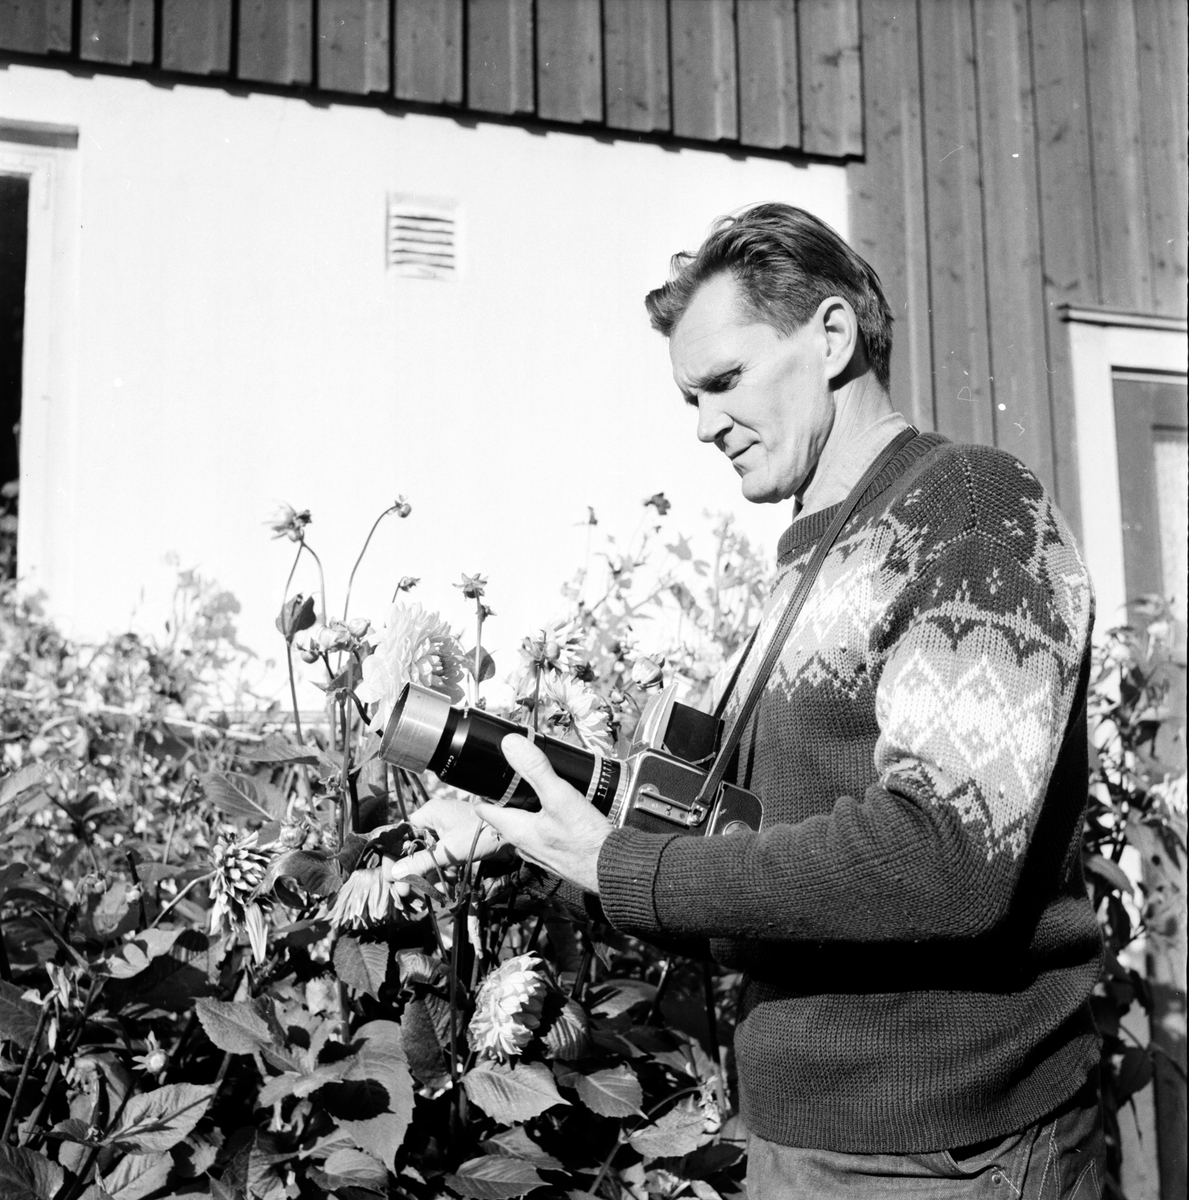 Mickelsson Hilding,
Glössbo,
17 Sept 1966